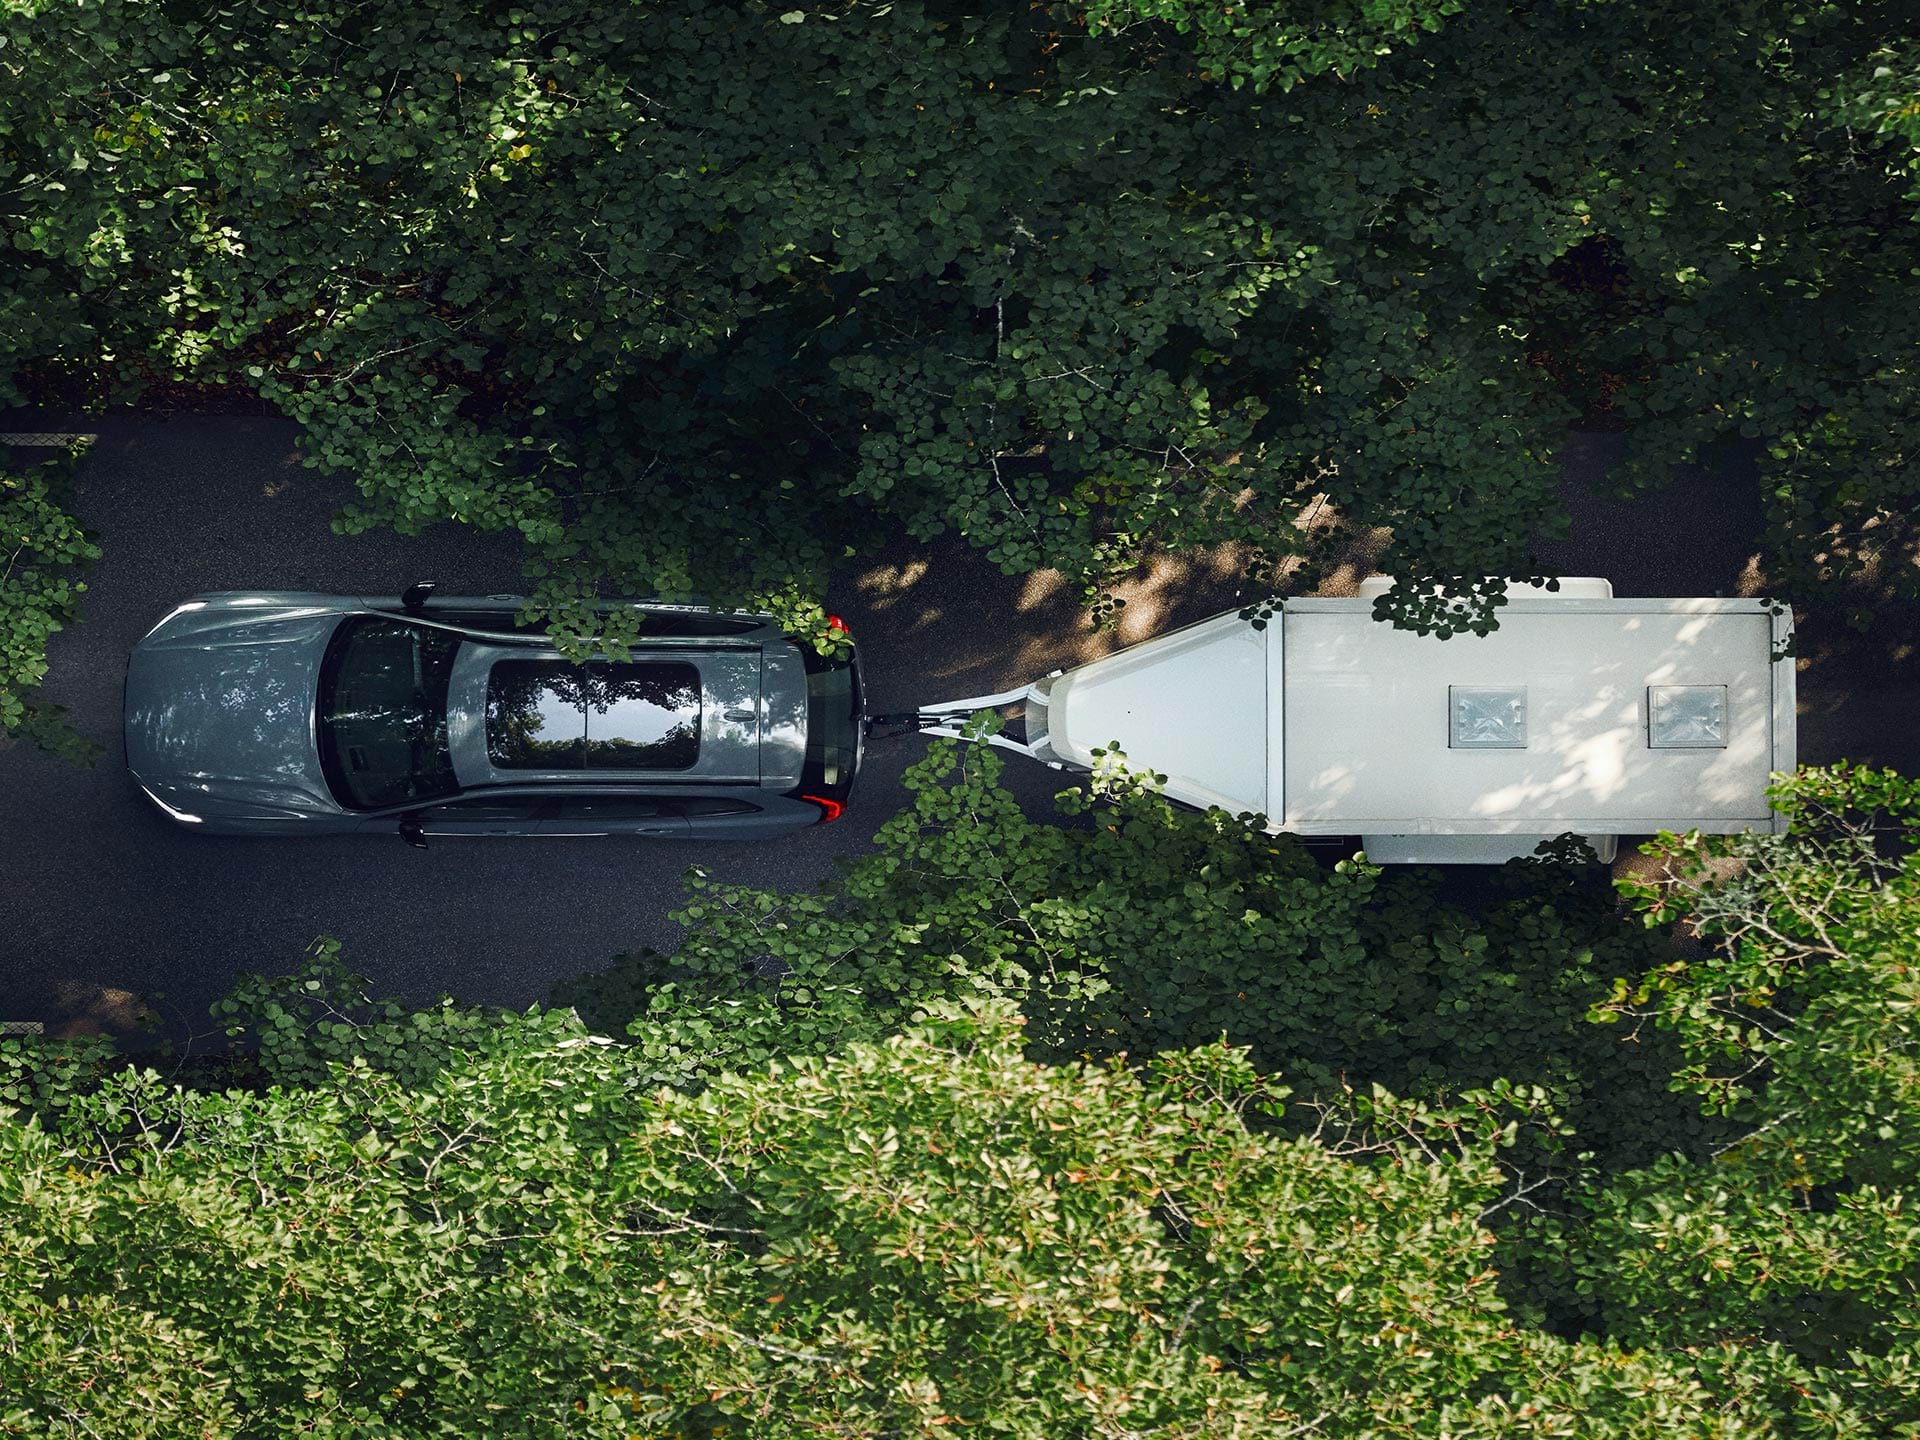 Egy fehér utánfutót vontató Volvo SUV madártávlatból, amint napsütésben egy lombos úton halad.